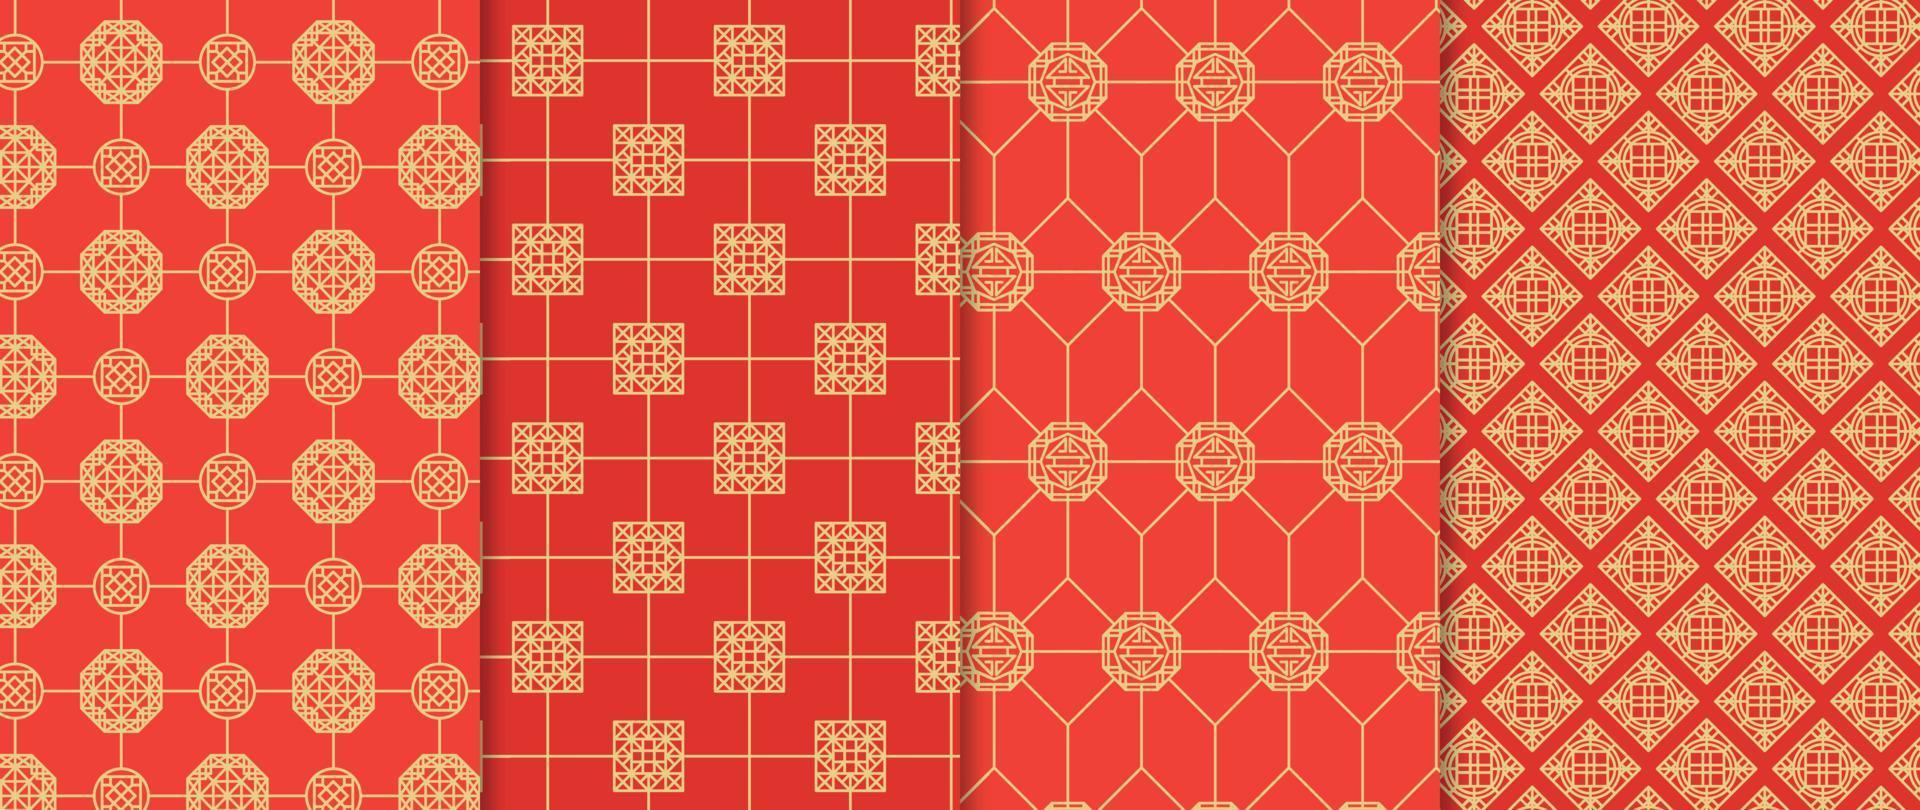 conjunto de vetores de fundo de padrões chineses. forma geométrica abstrata, padrões vetoriais de grade e amostras. design de papel de parede oriental de luxo para tecido, papel de parede, banners, estampas e artes de parede.